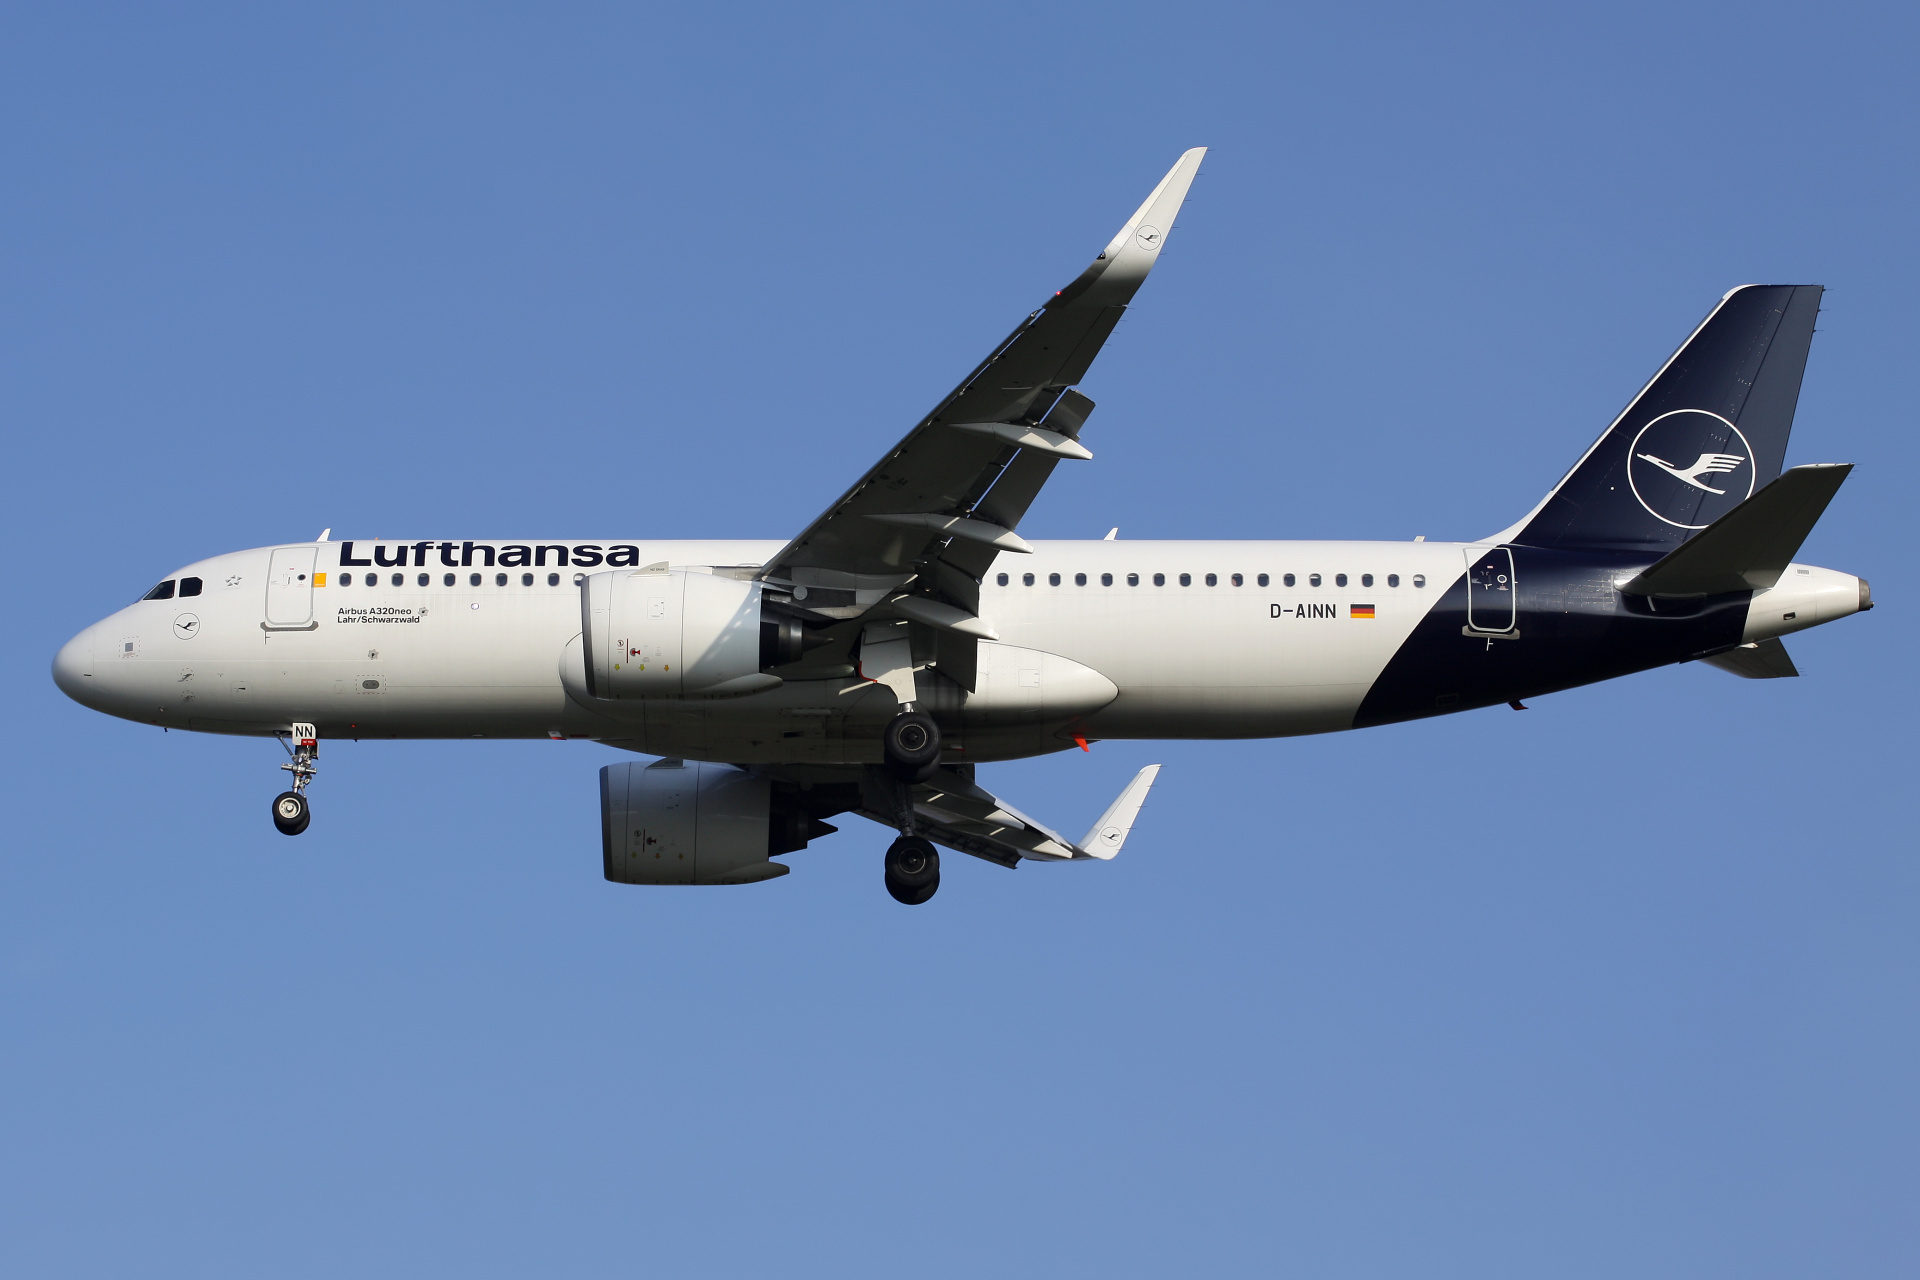 D-AINN (Aircraft » EPWA Spotting » Airbus A320neo » Lufthansa)